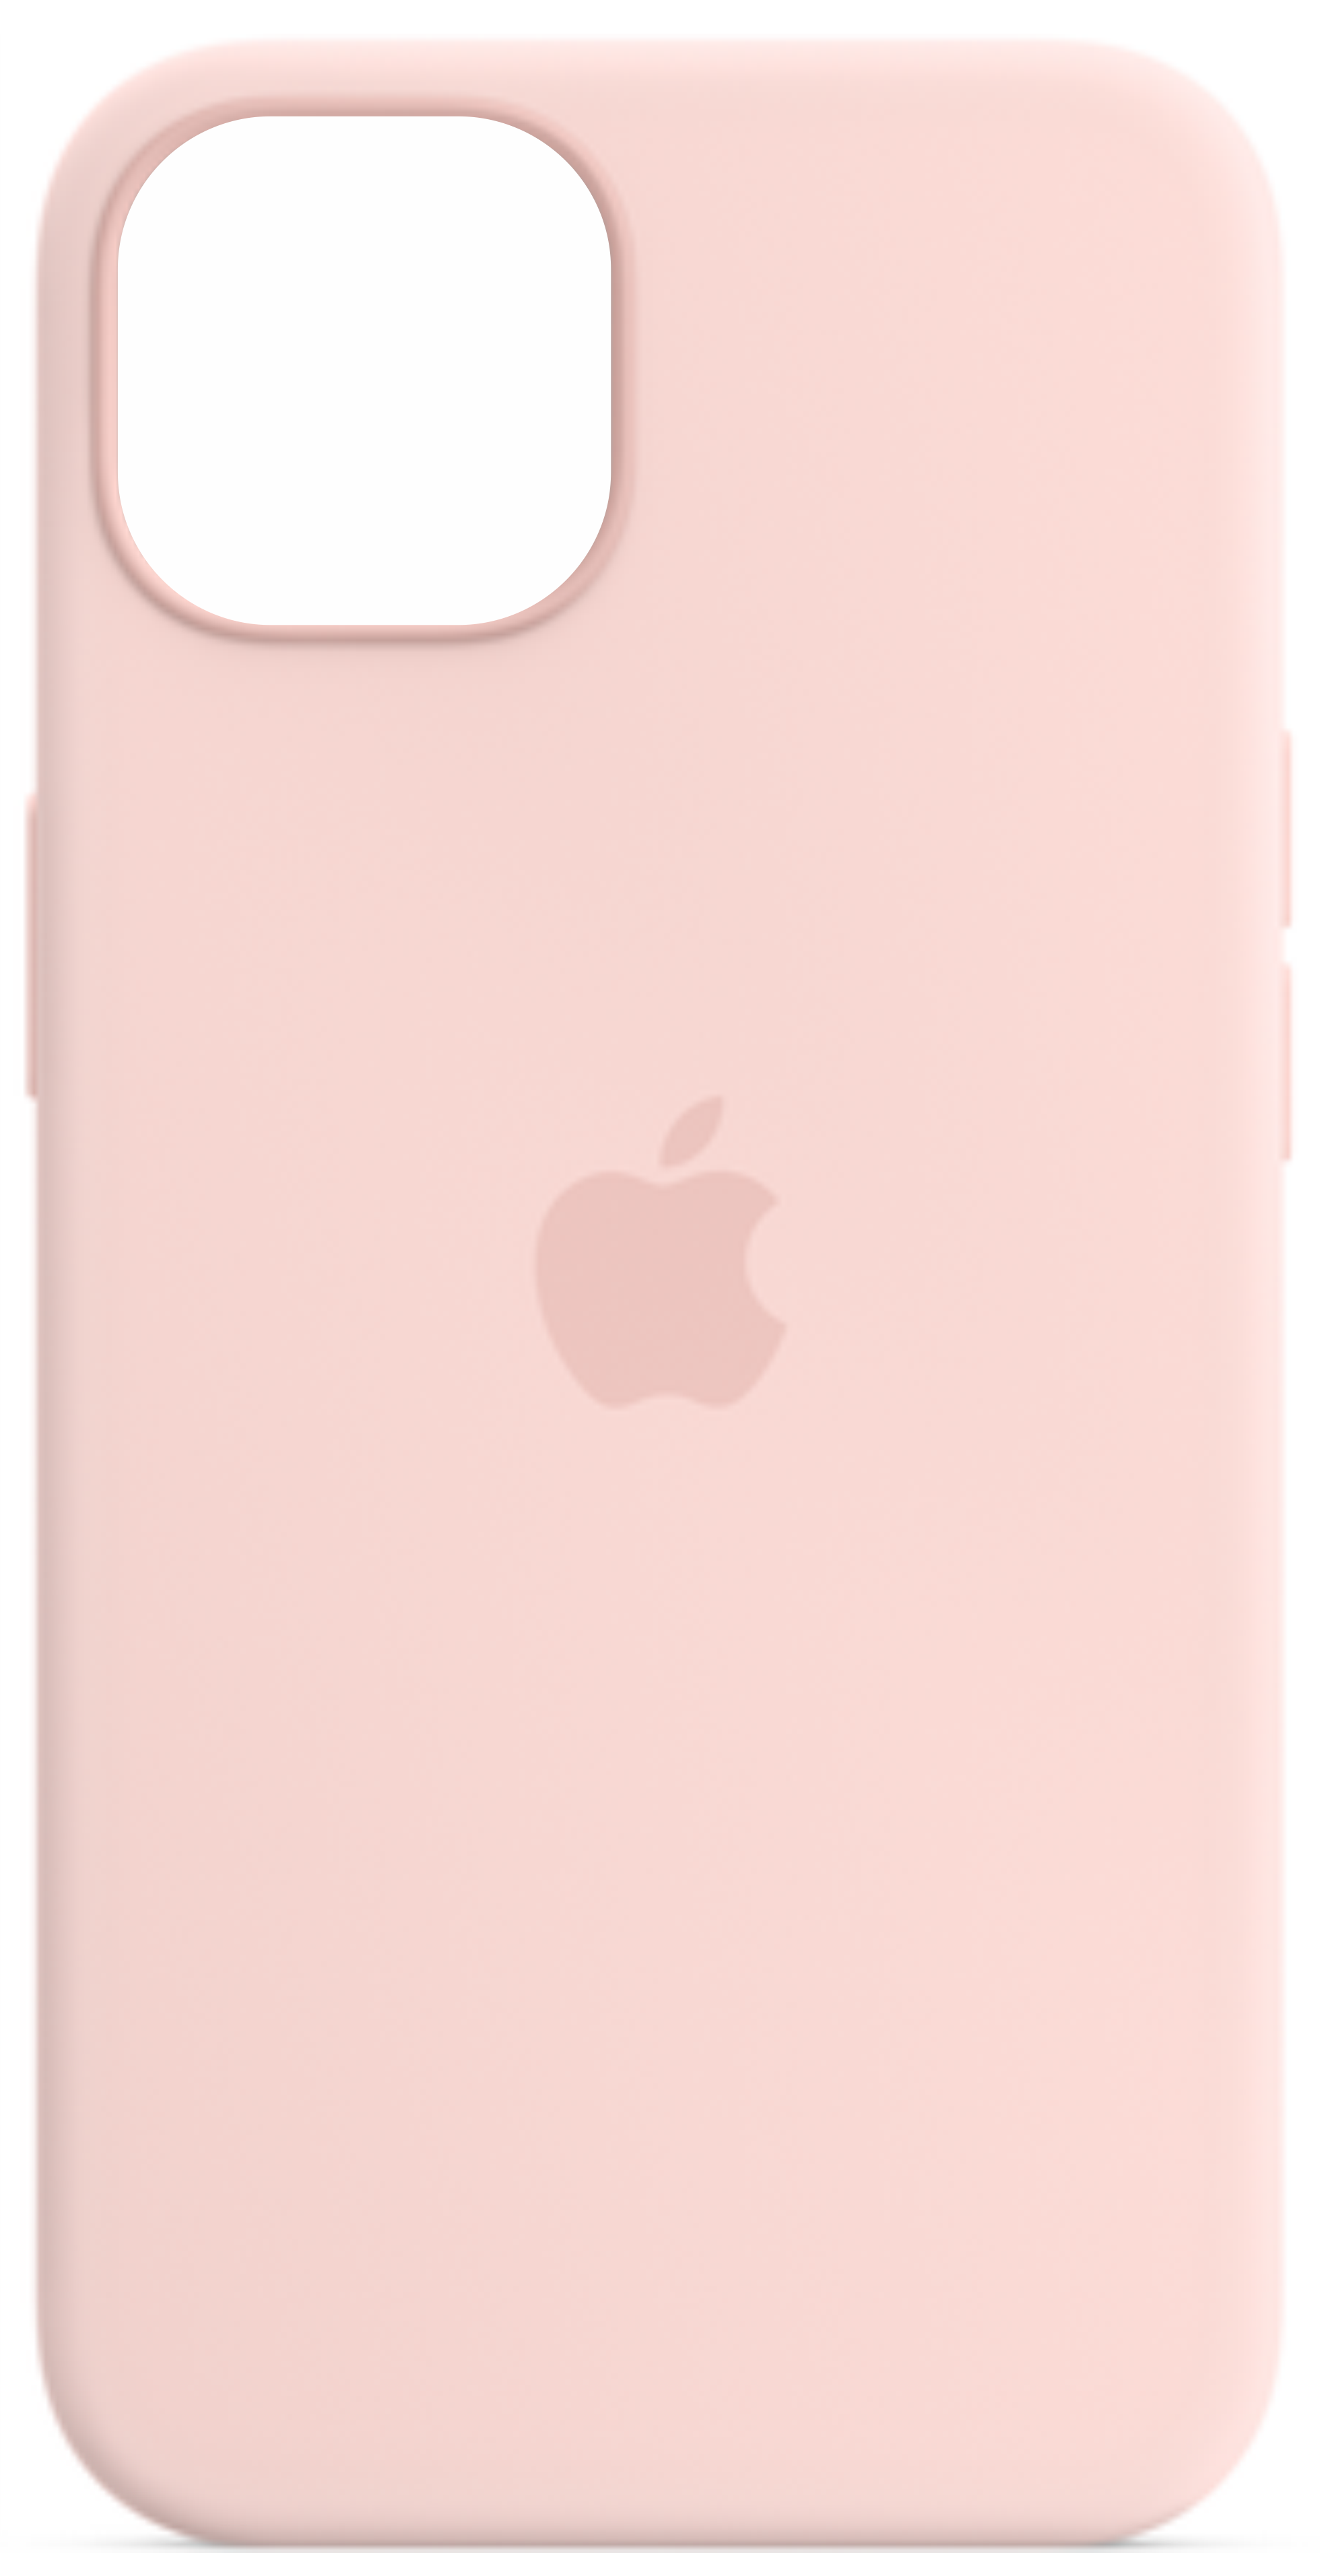 Чехол Orig Silicone Case для iPhone 12 mini, розовый купить в Краснодаре